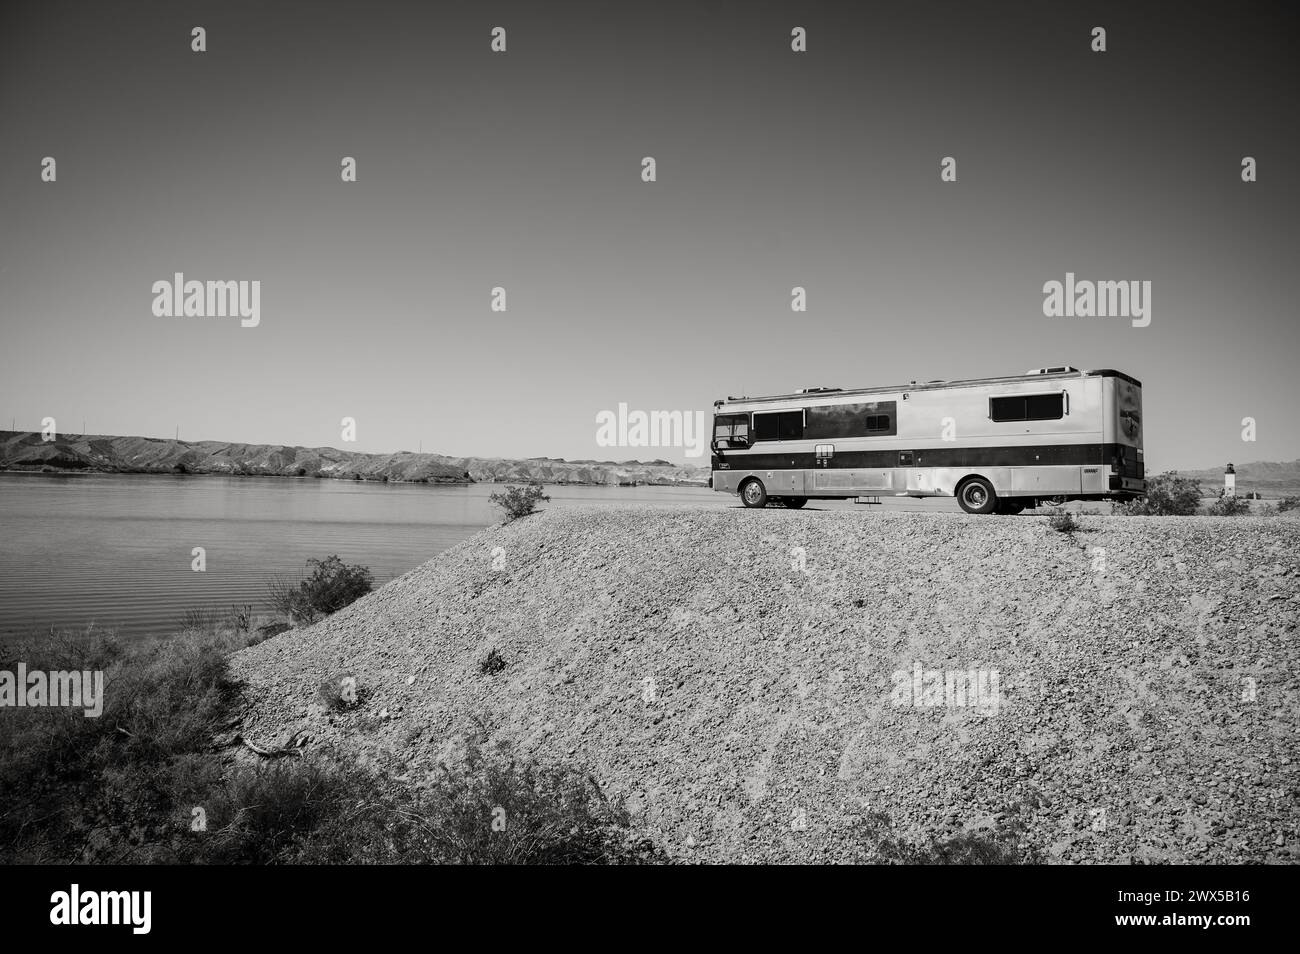 Un grande camper in stile autobus parcheggiato sulle rive del Lago Havasu. Lake Havasu City, Stati Uniti. Immagine in bianco e nero. Foto Stock